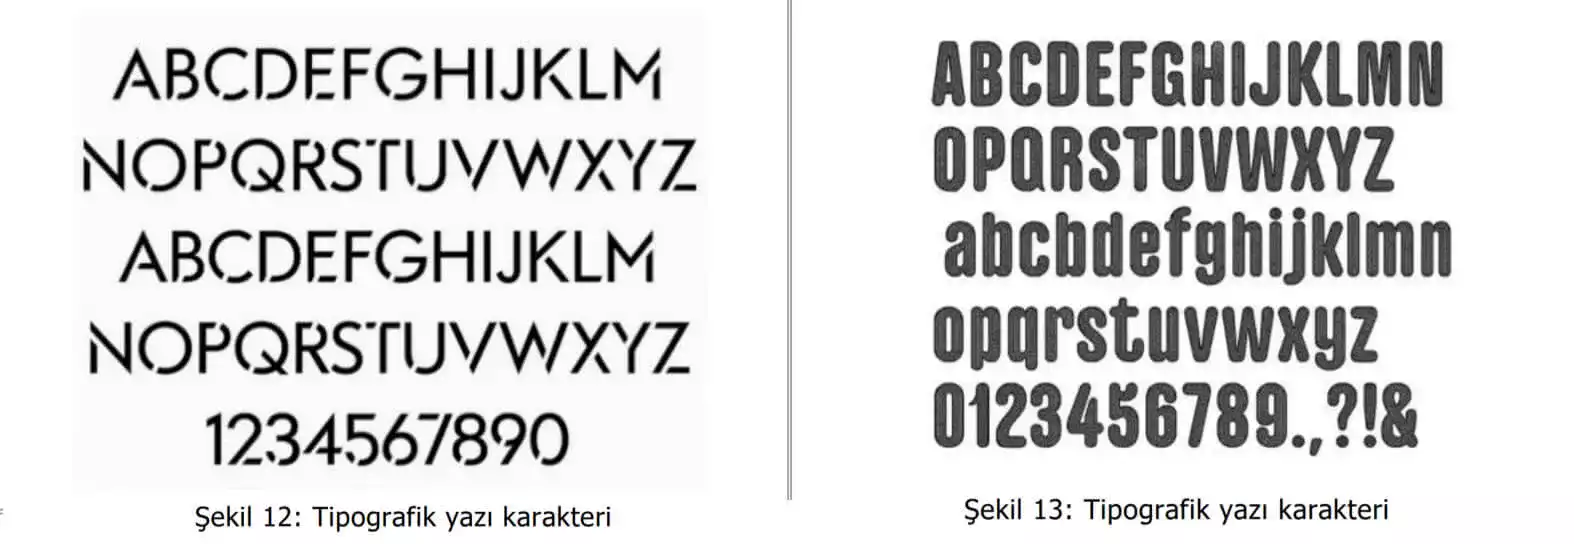 tipografik yazı karakter örnekleri-Mersin patent